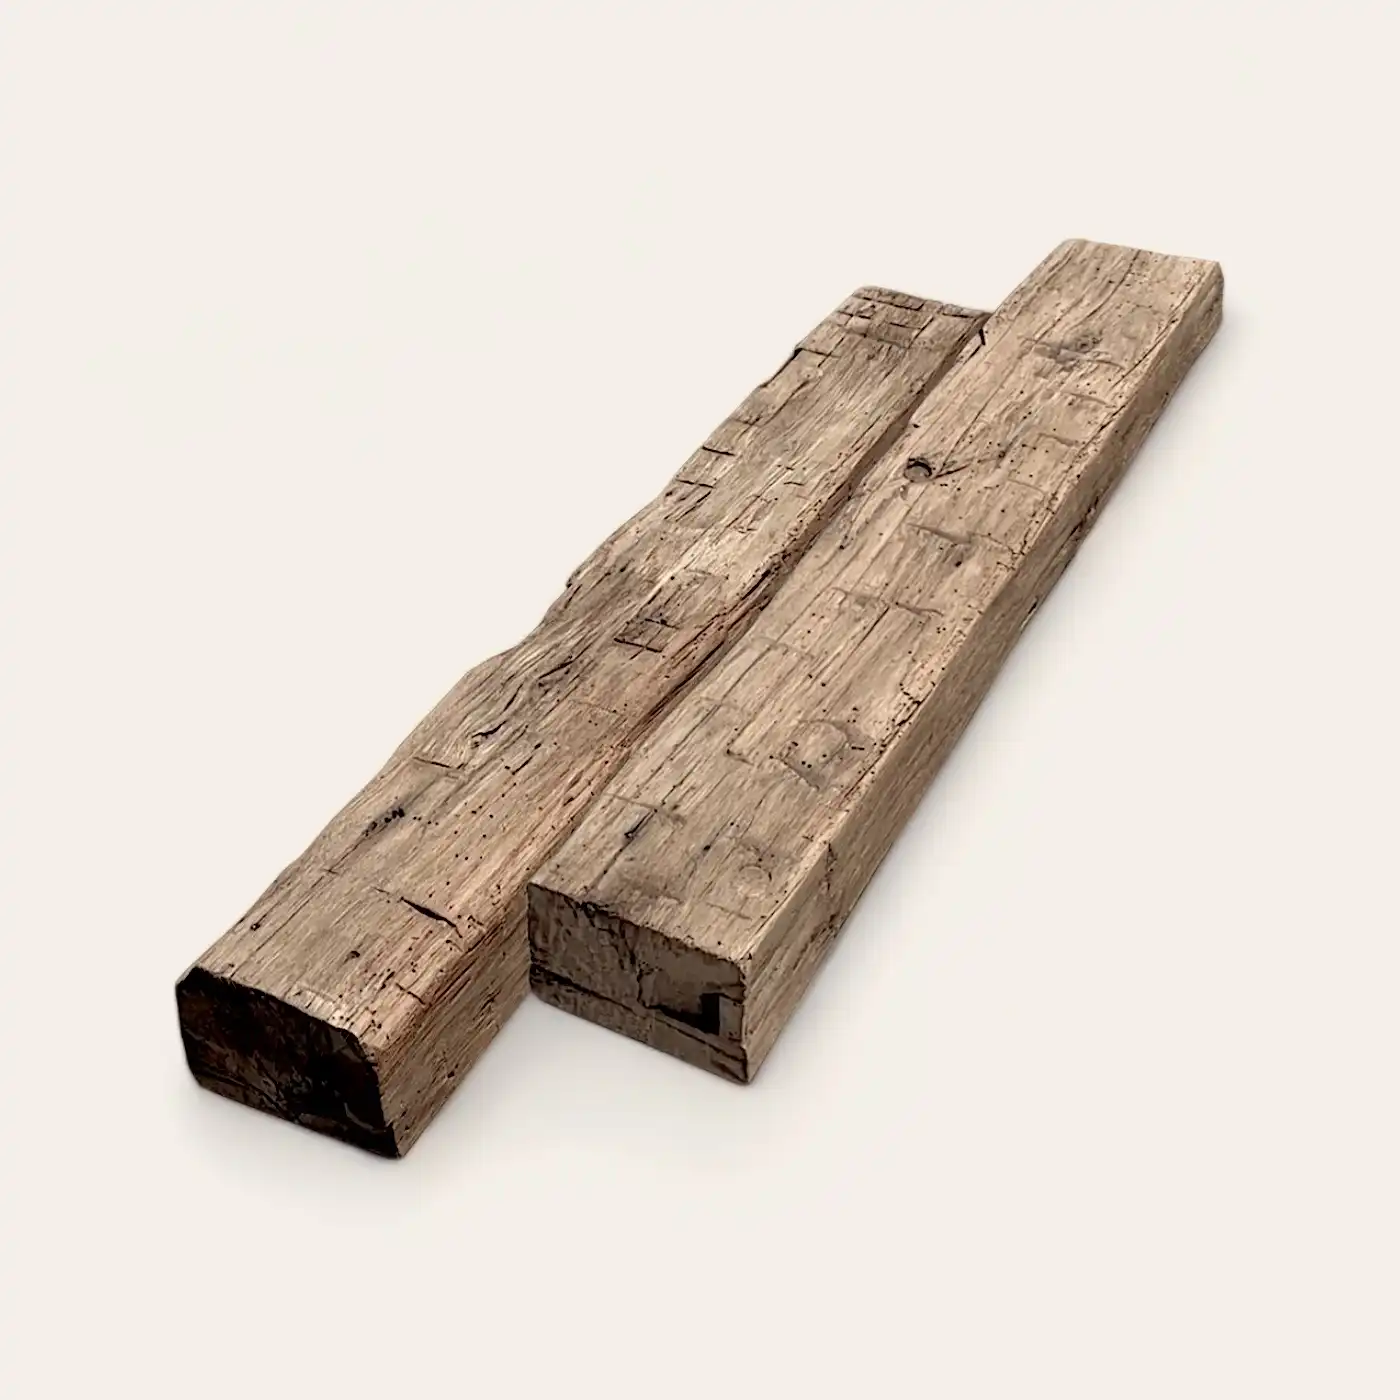  Une planche de bois vieilli sur fond blanc. 